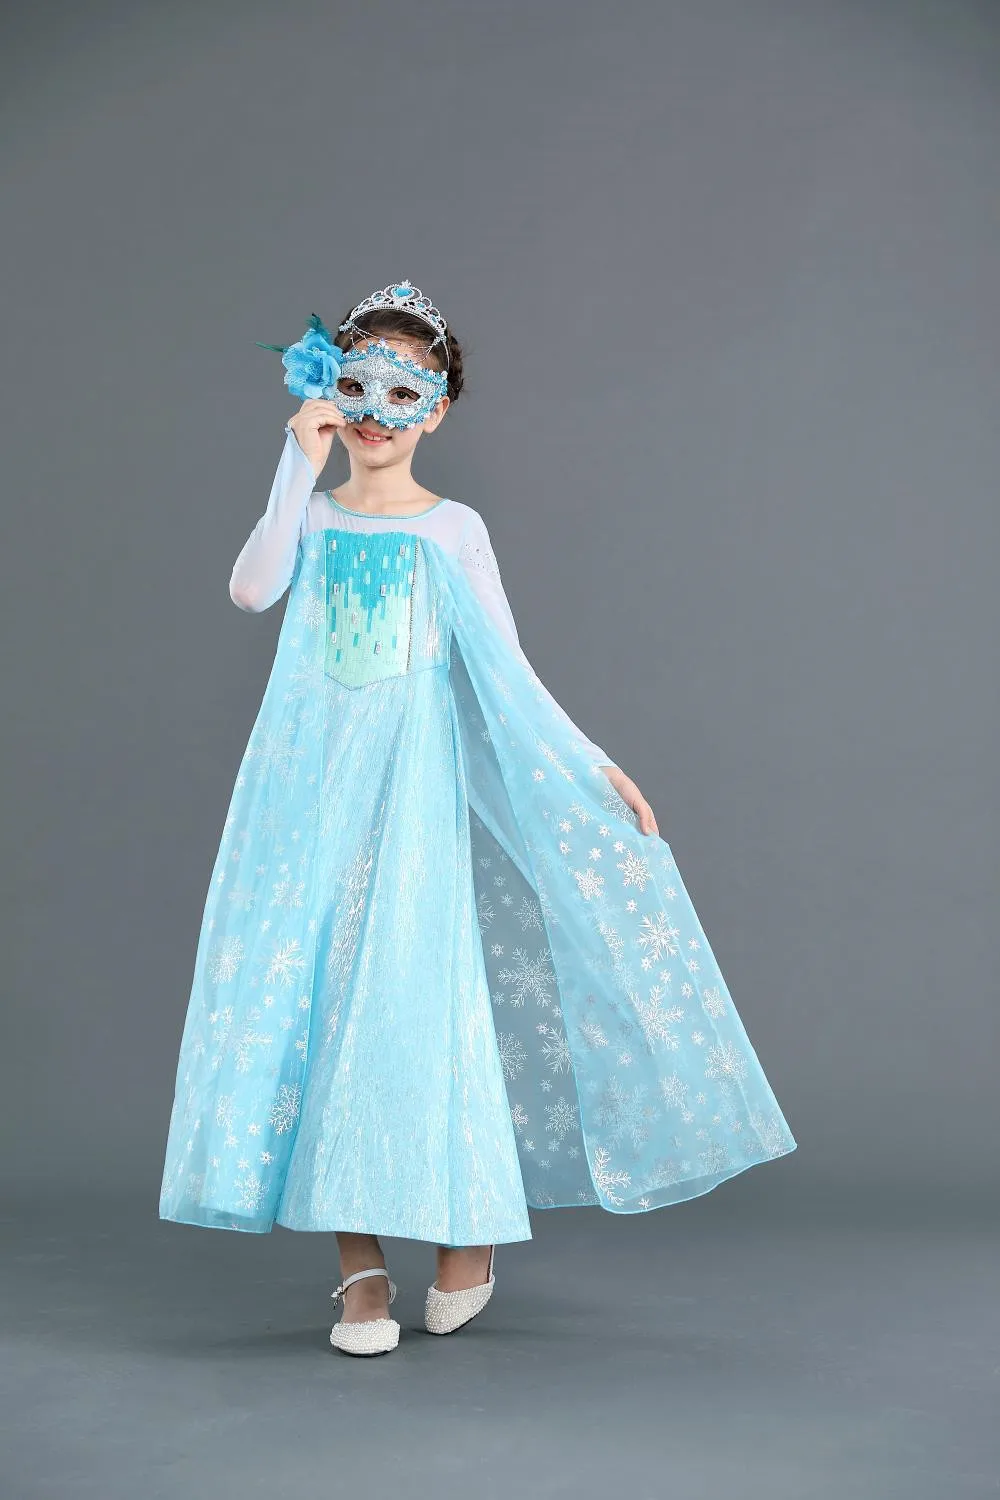 Платья Эльзы для девочек, косплей, принцесса Эльза-Снежная королева, костюм Эльзы, вечерние костюмы на Хэллоуин, fantasia, детская одежда для девочек